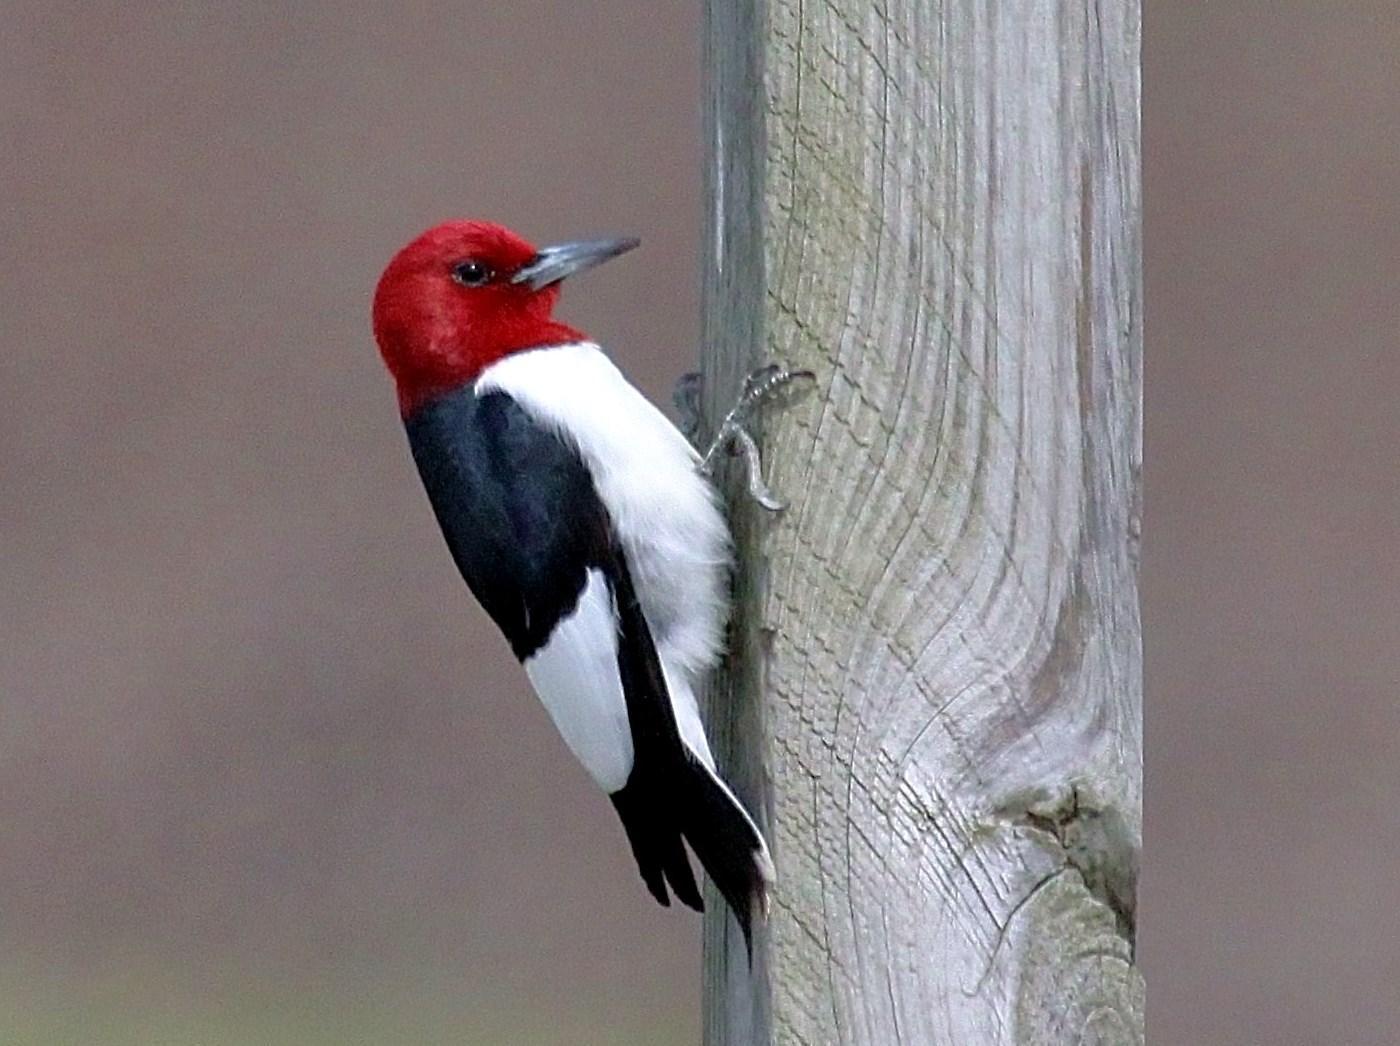 Red-headed Woodpecker Photo by Matthew McCluskey